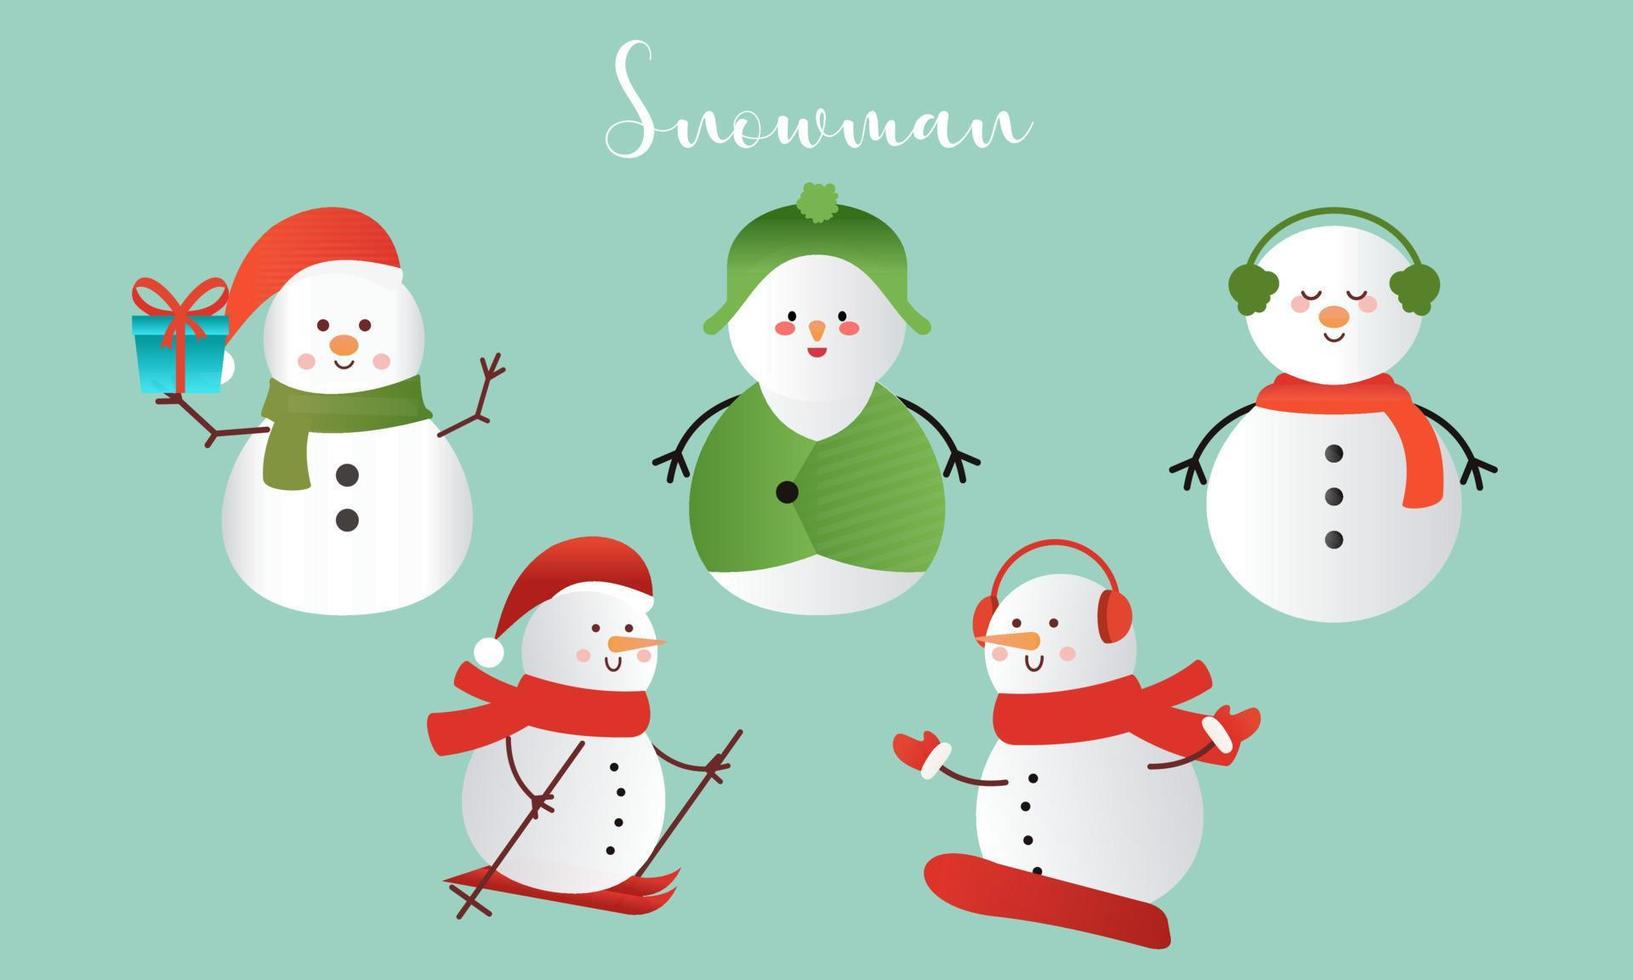 conjunto de muñecos de nieve de dibujos animados en diferentes poses ilustración vectorial vector